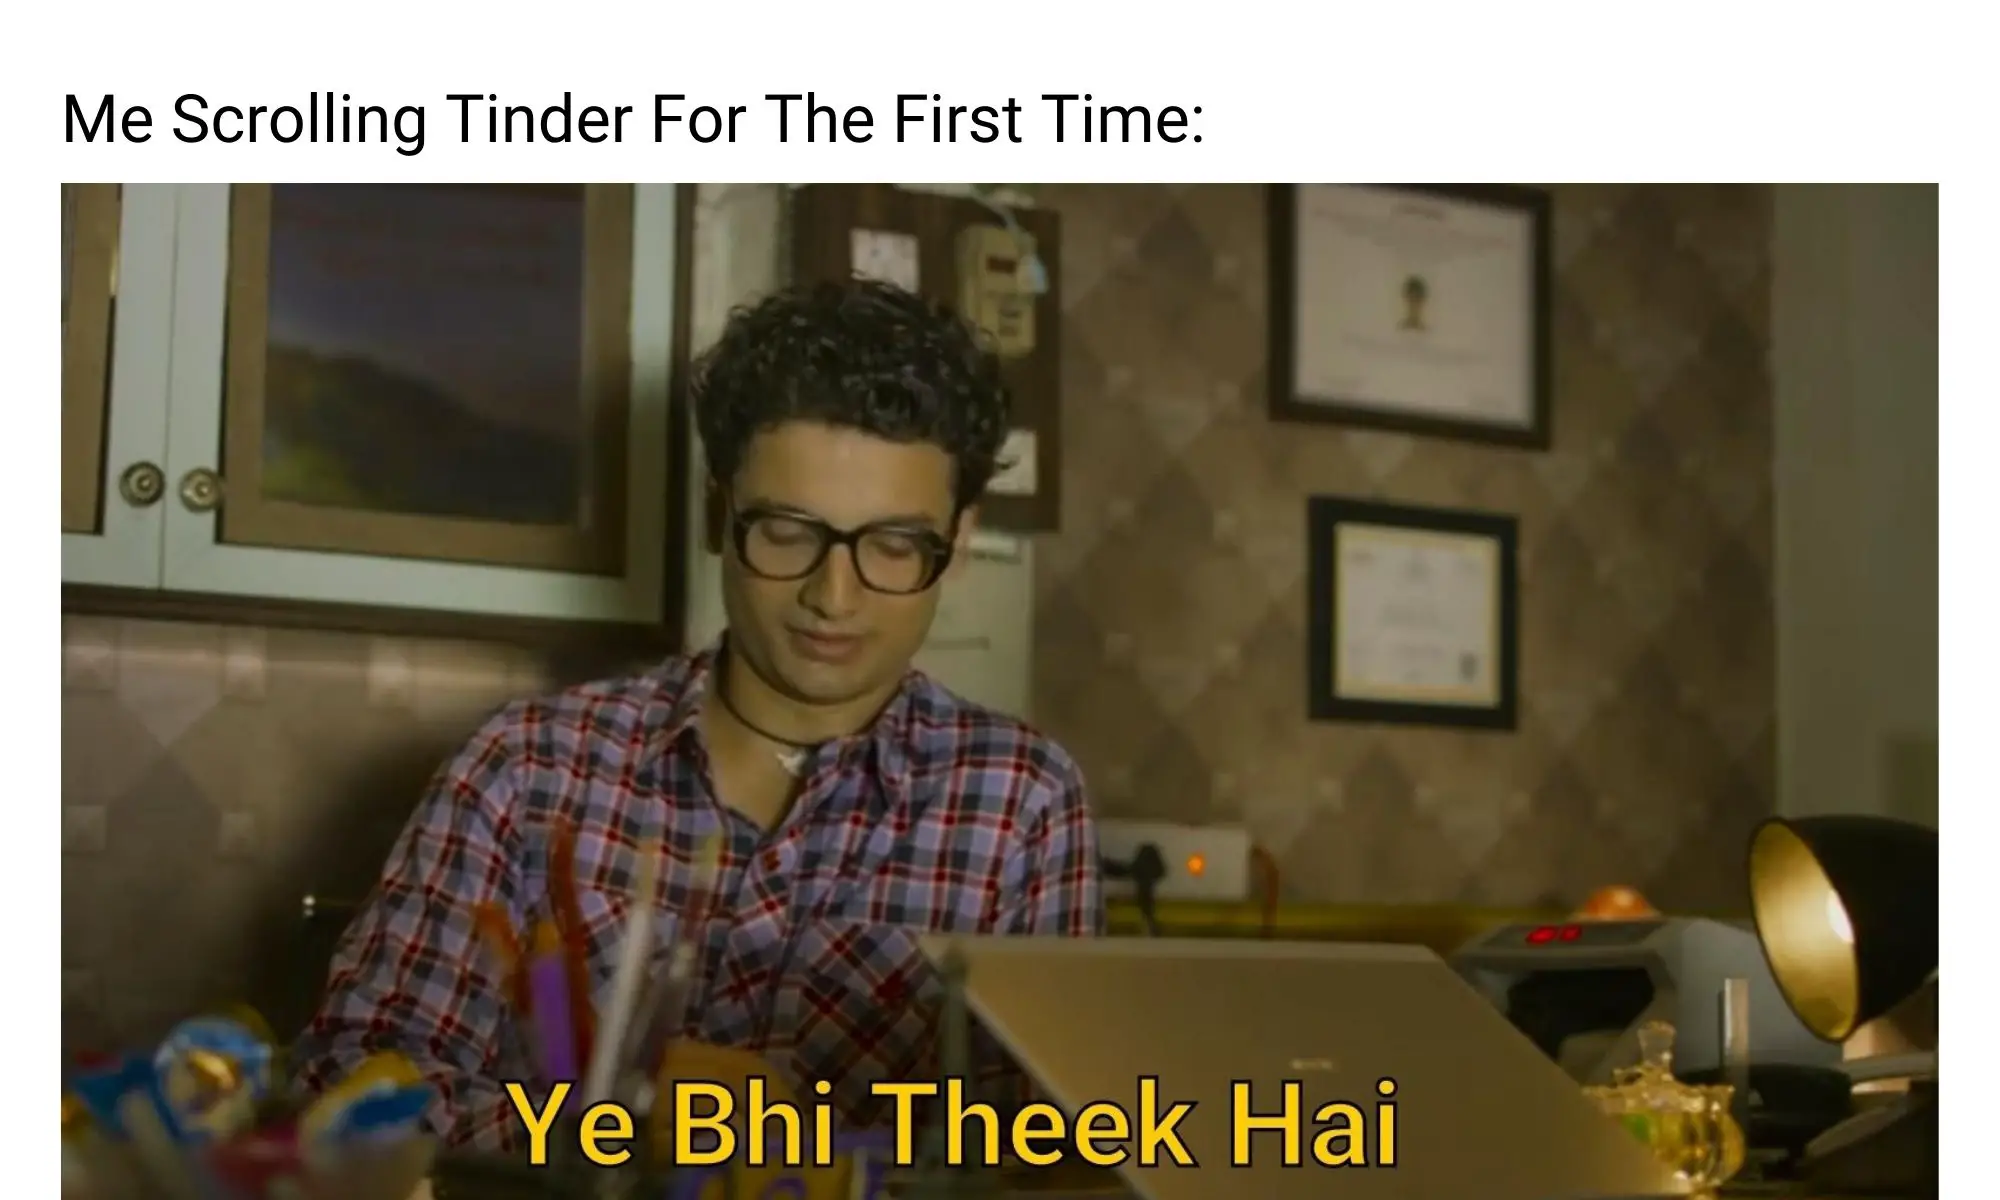 Tinder meme on Mirzapur season 2